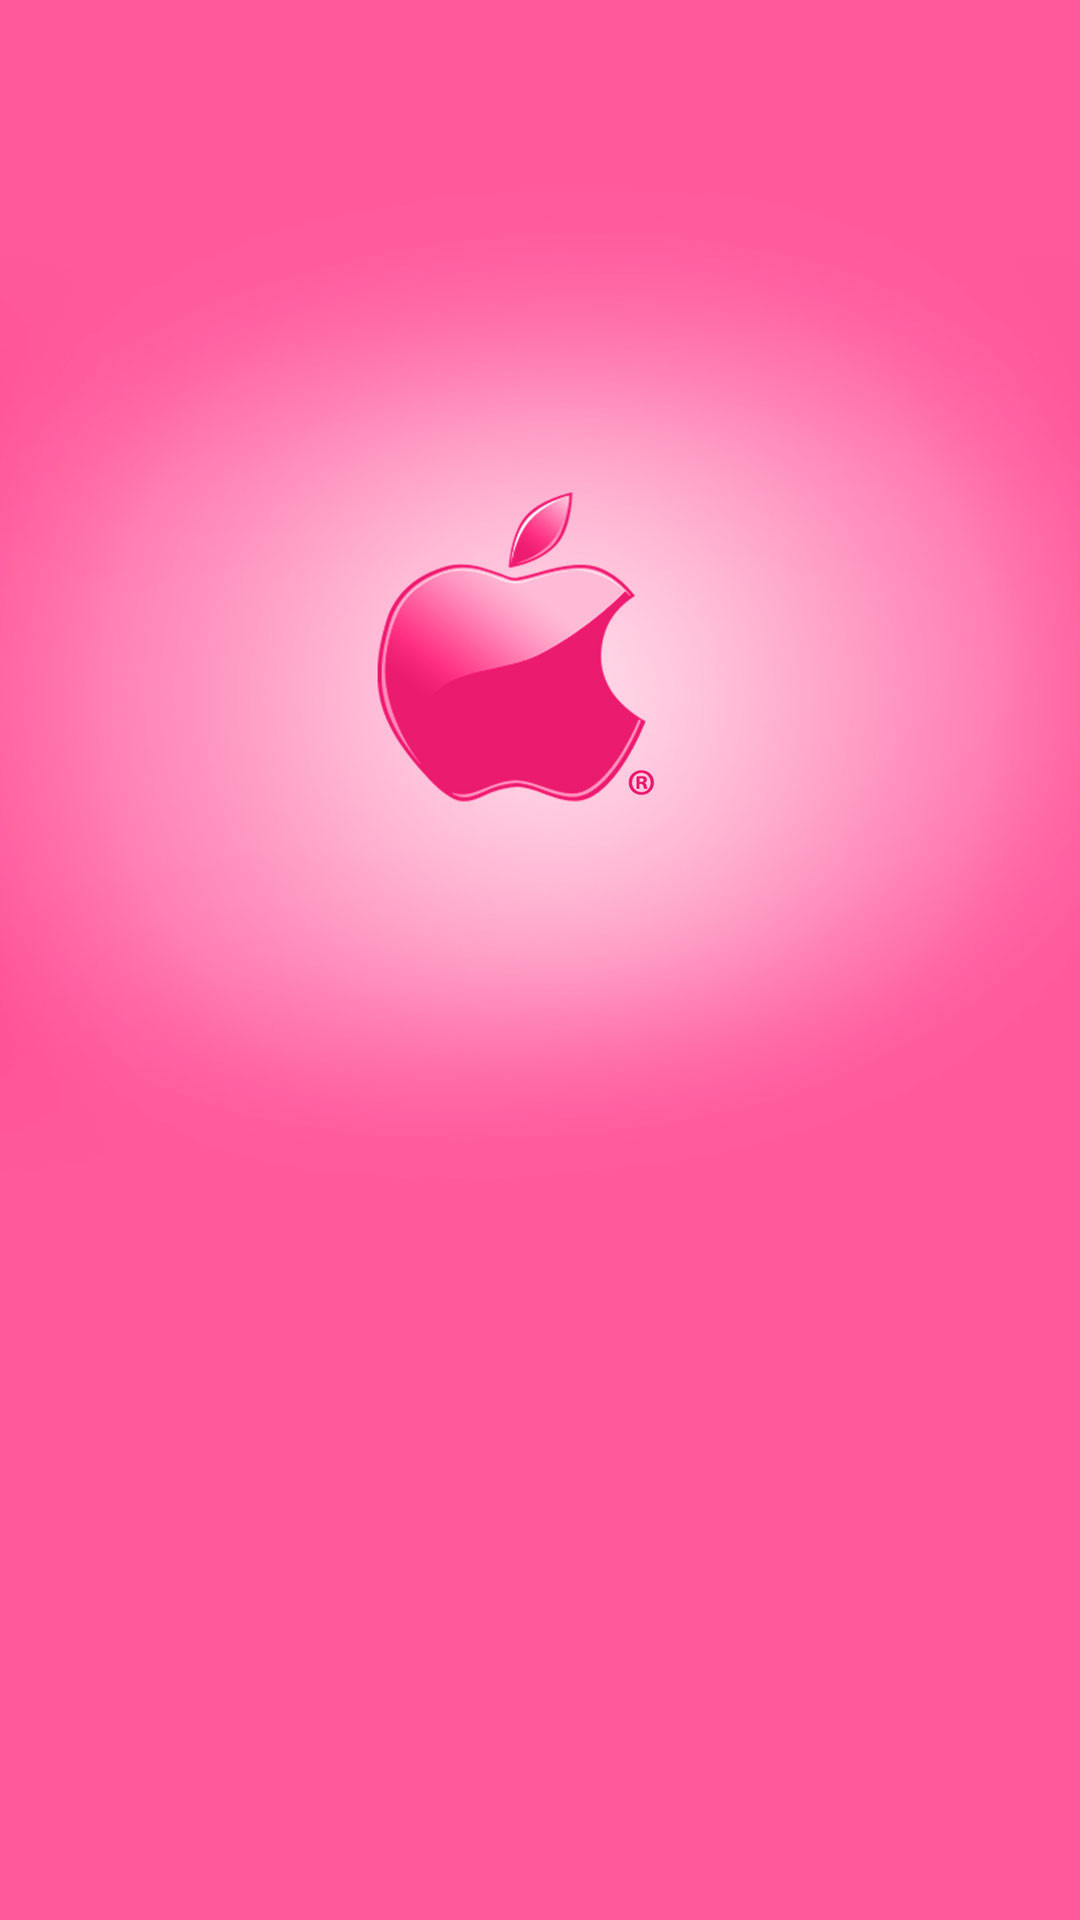 1080x1920 Cellphone wallpaper Â· Cute pink Apple